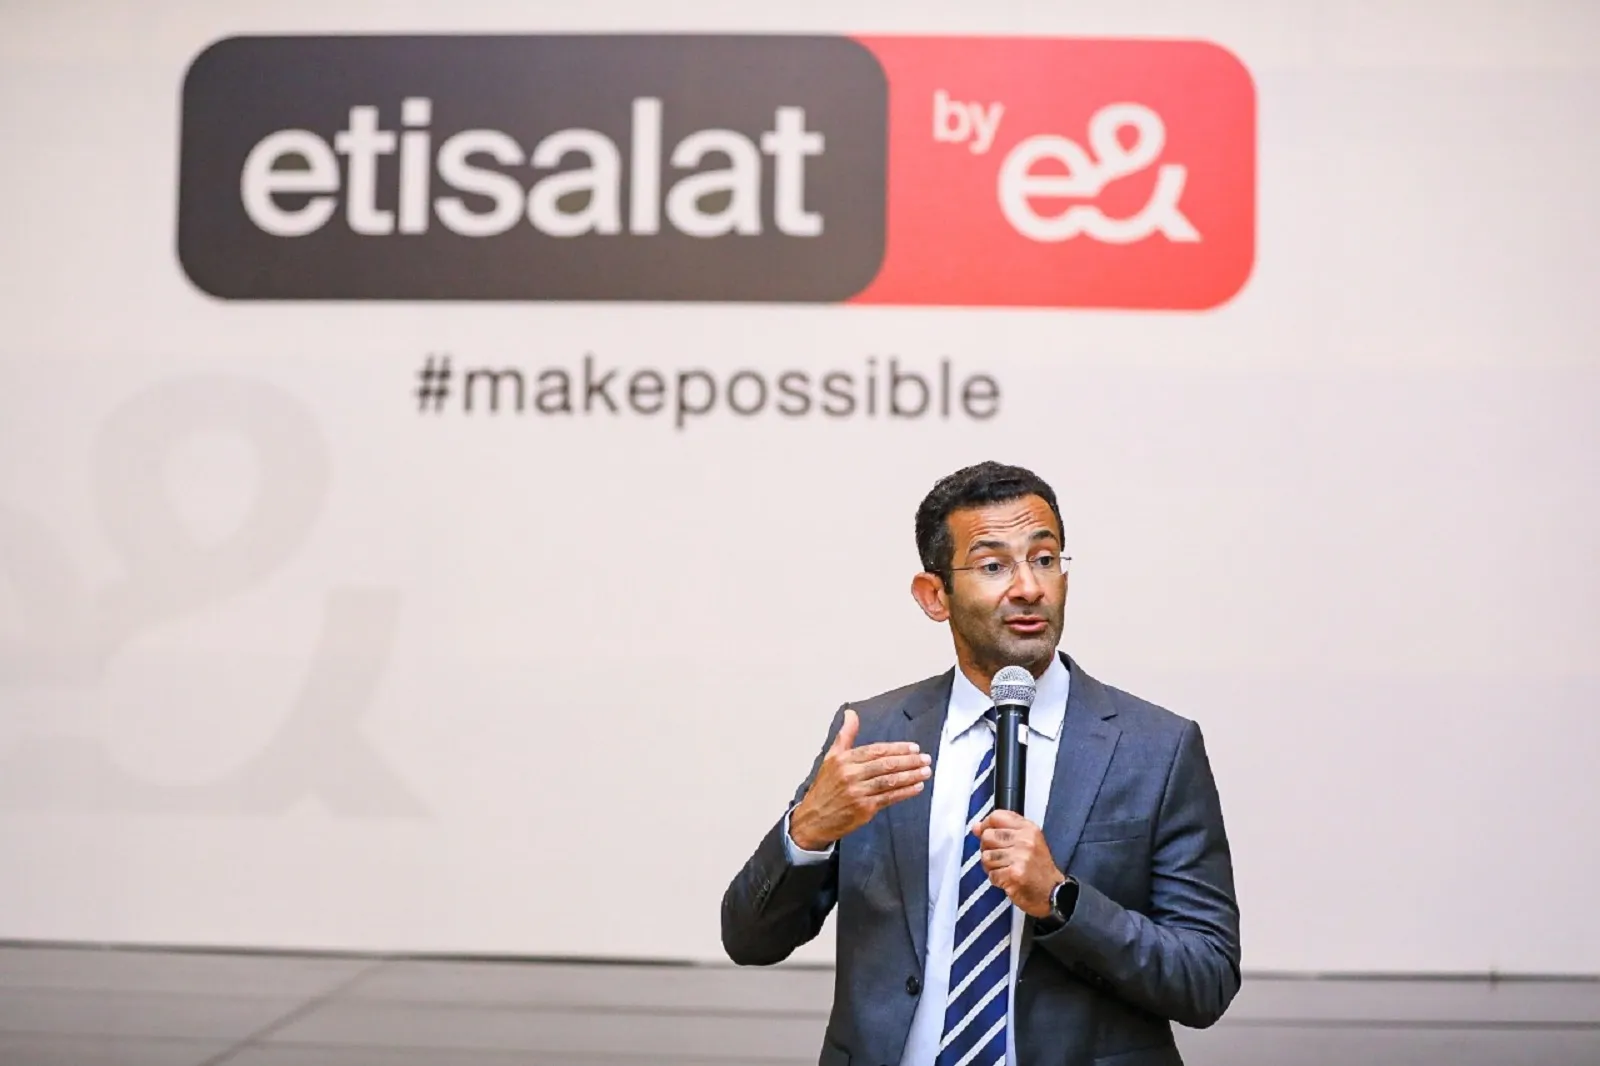 Etisalat by e& Launch